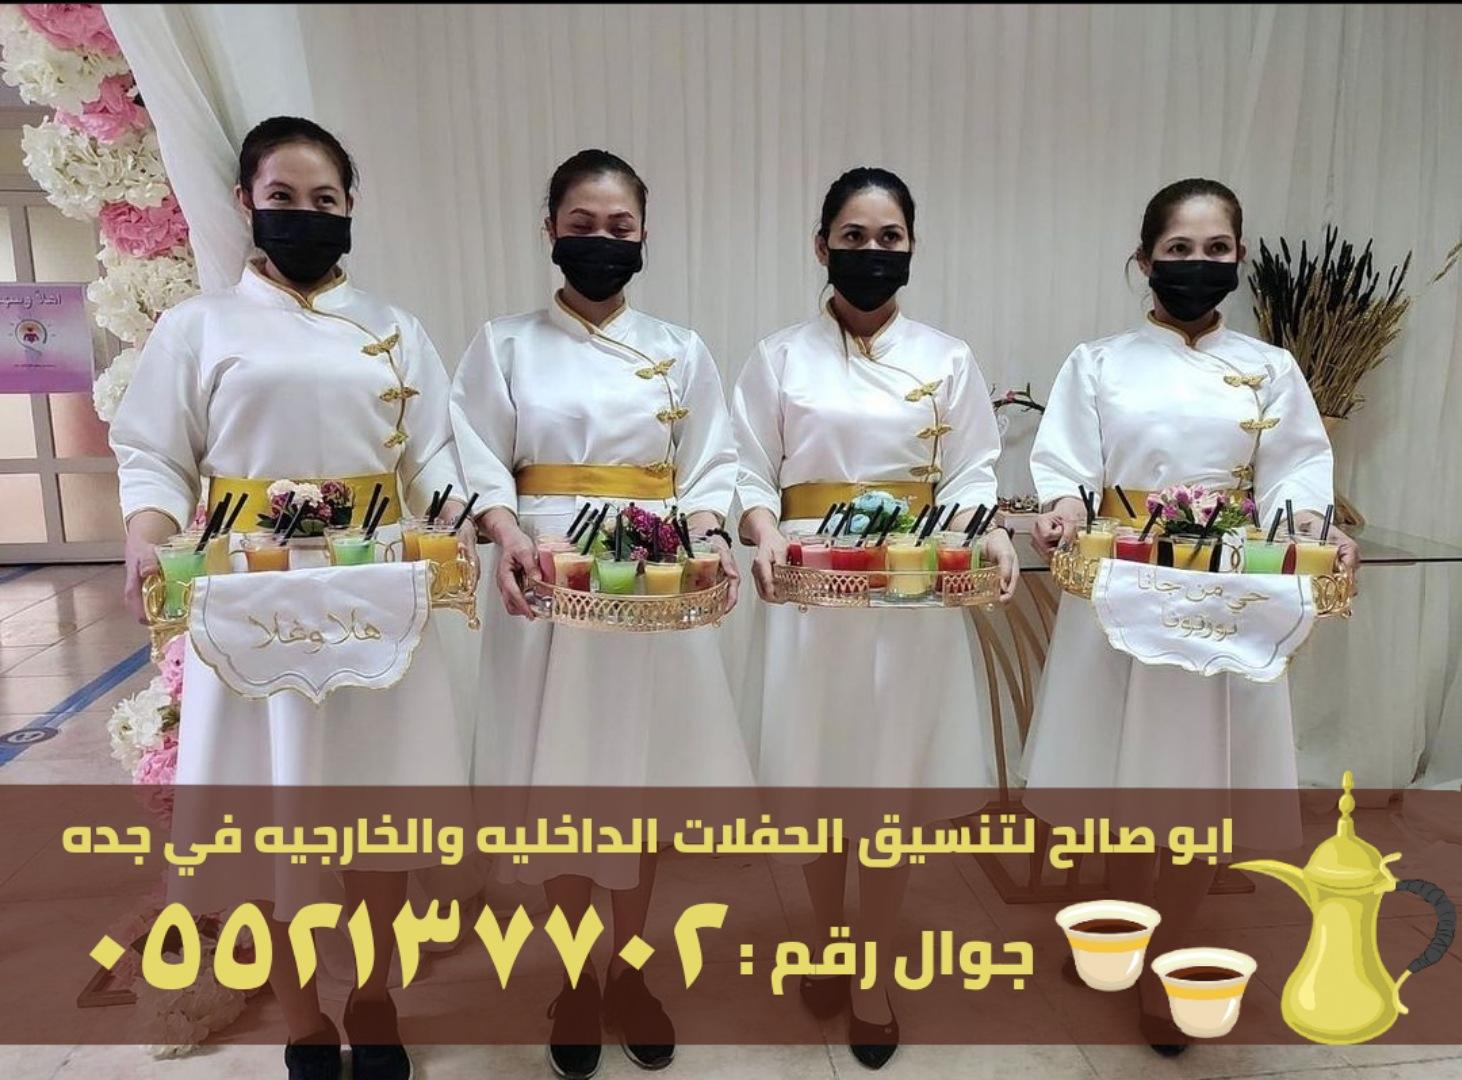 فريق صبابين قهوة للضيافة في جدة, 0552137702 742078883